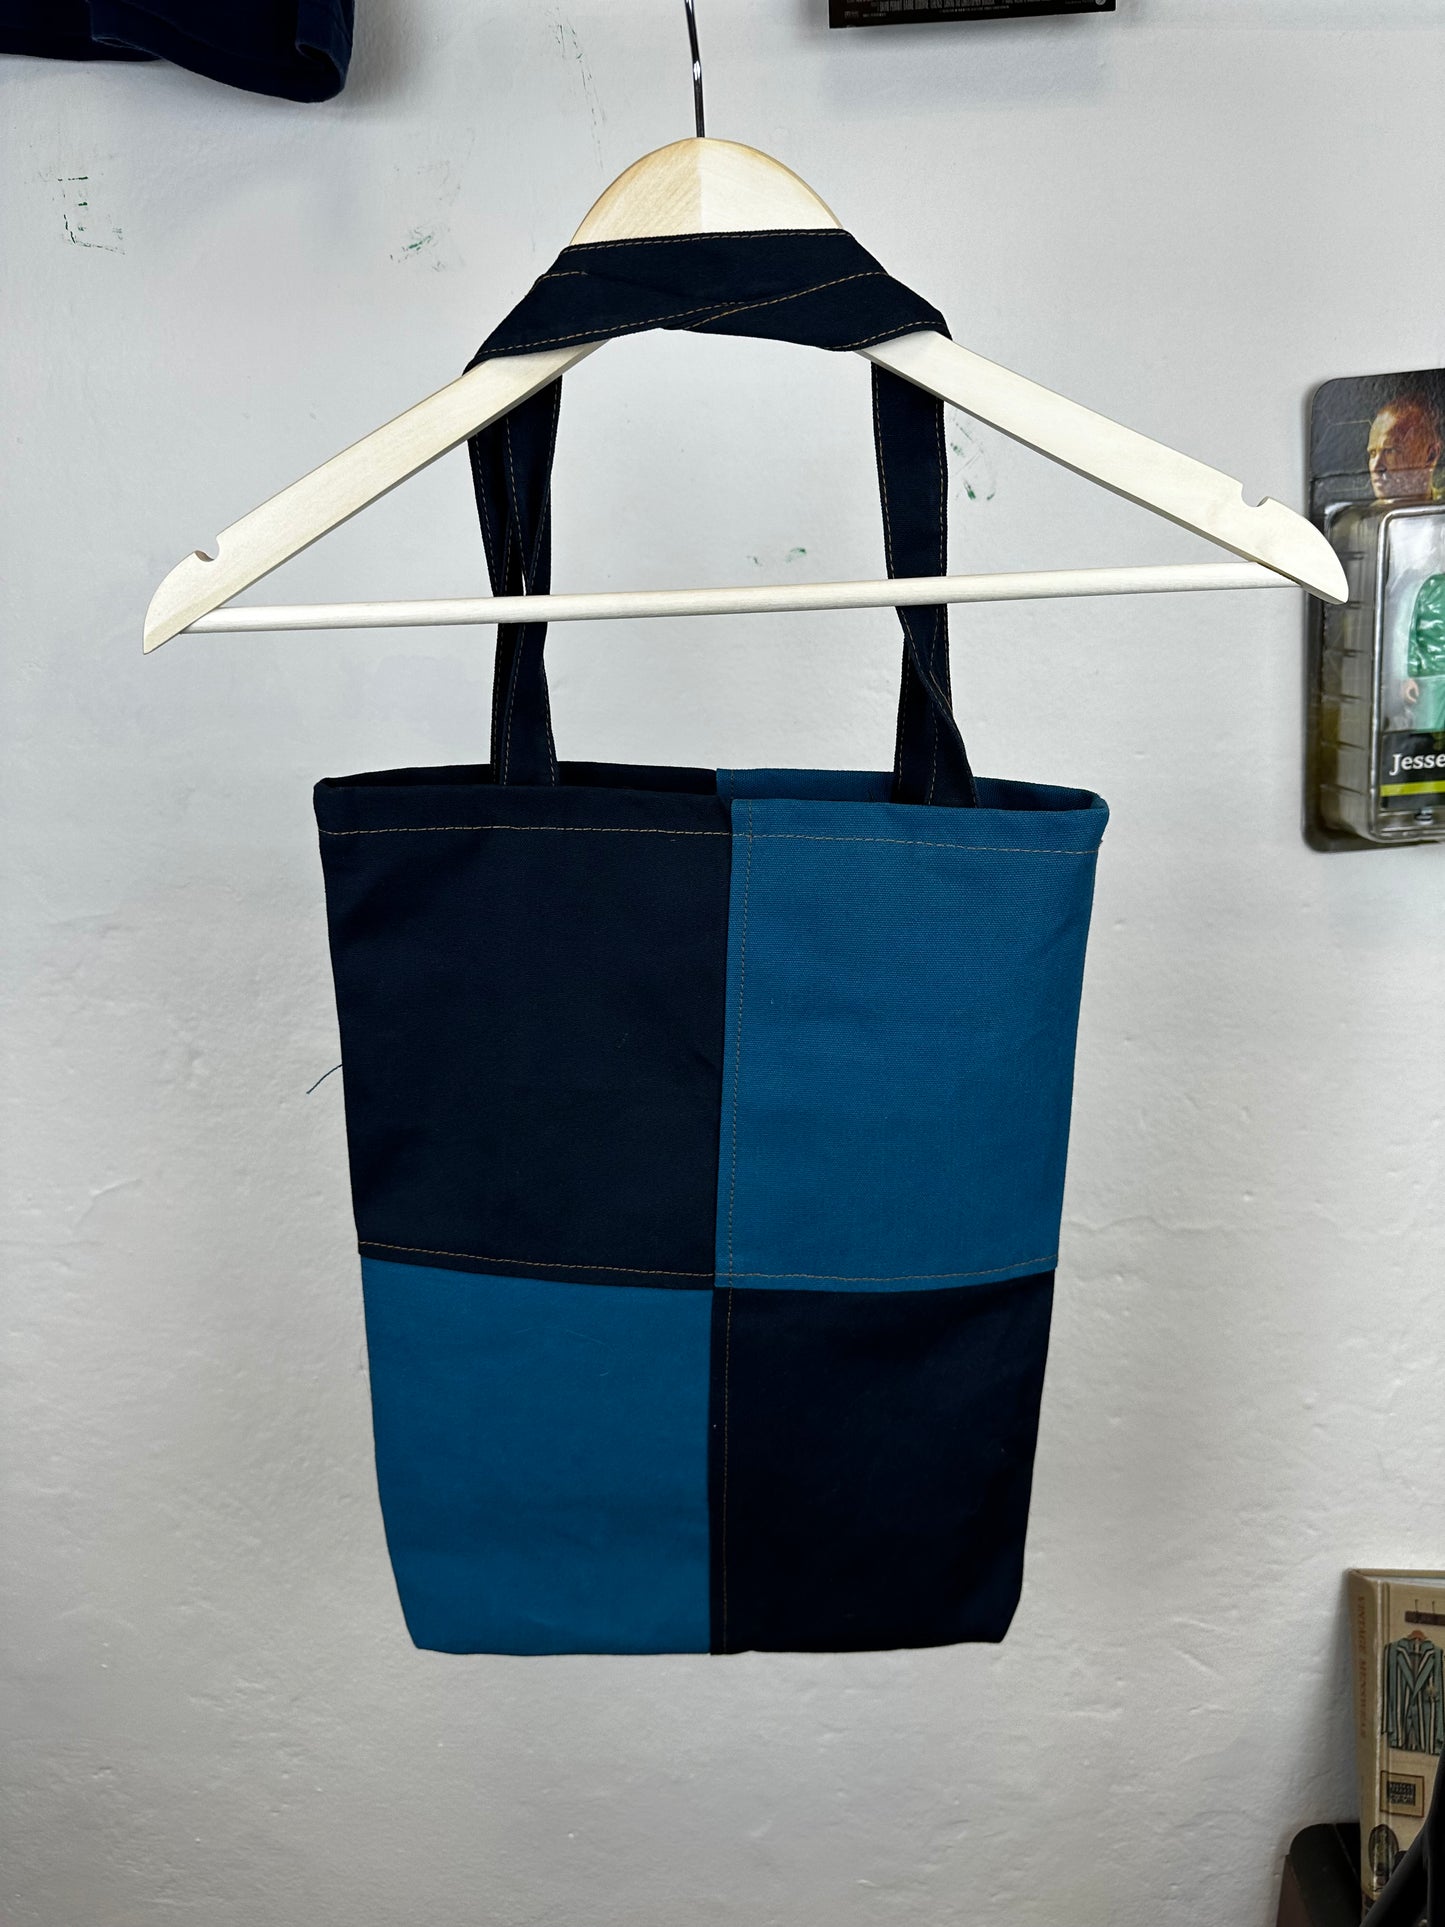 Vintage Carhartt Reworked Tote Bag Blue/Navy